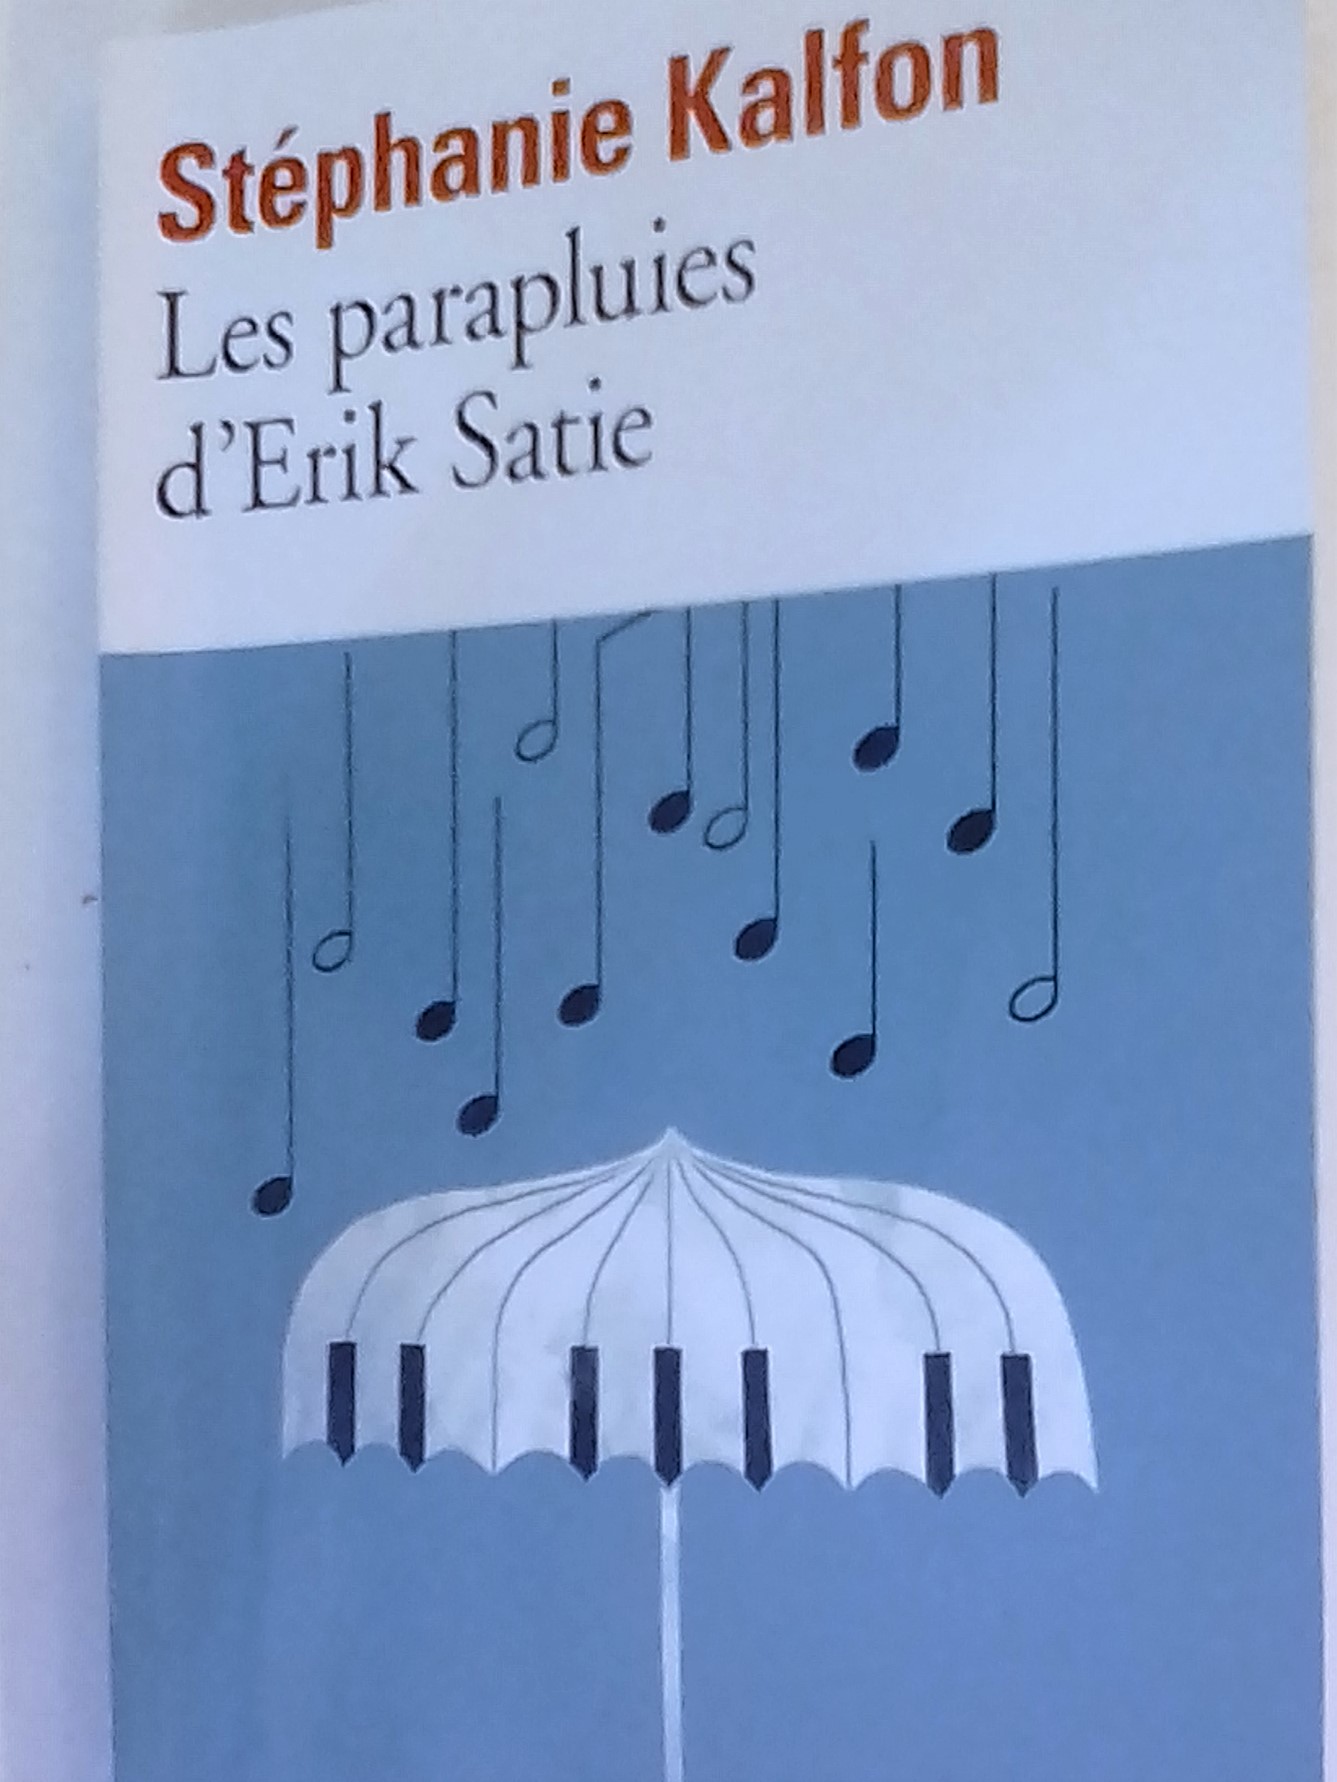 Les parapluies d'Erik Satie  Stéphanie Kalfon Gallimard 2017